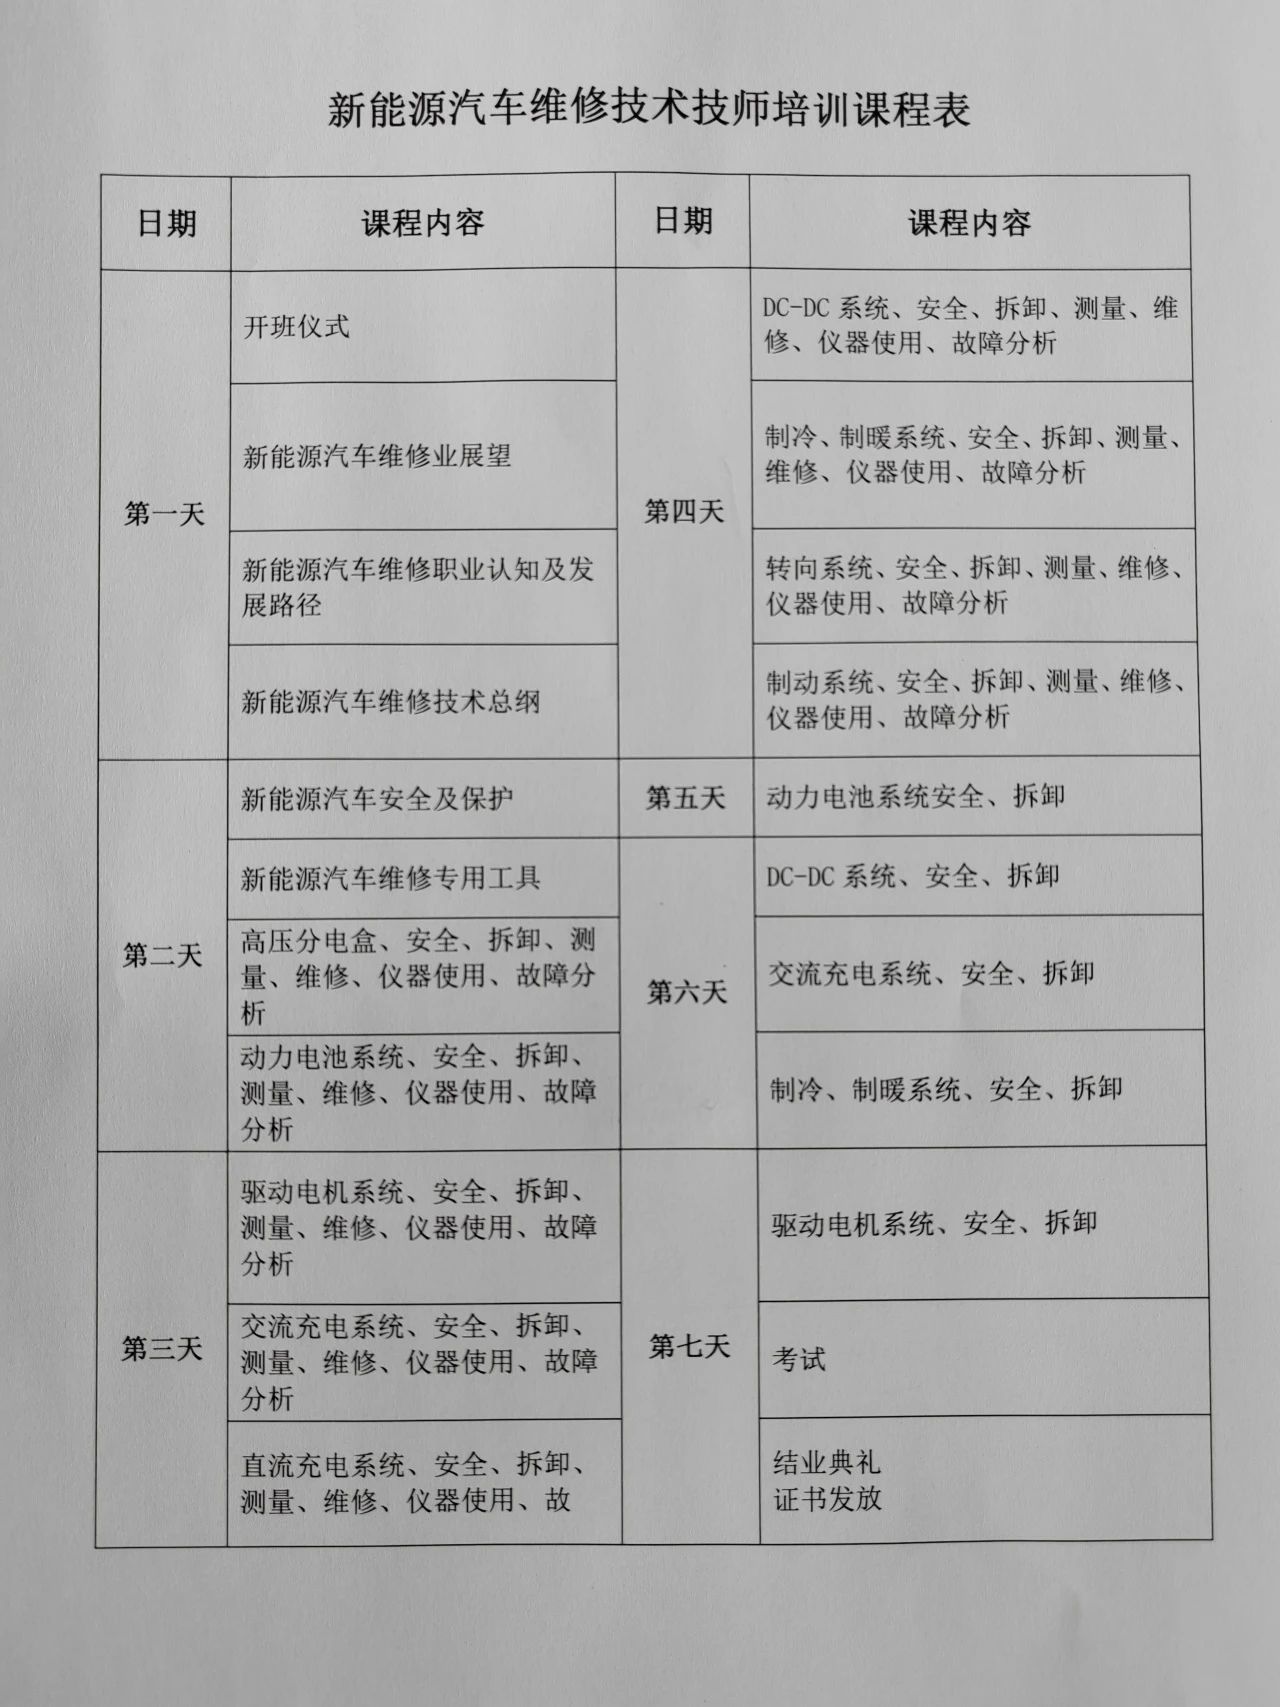 深圳風向標教育資源股份有限公司